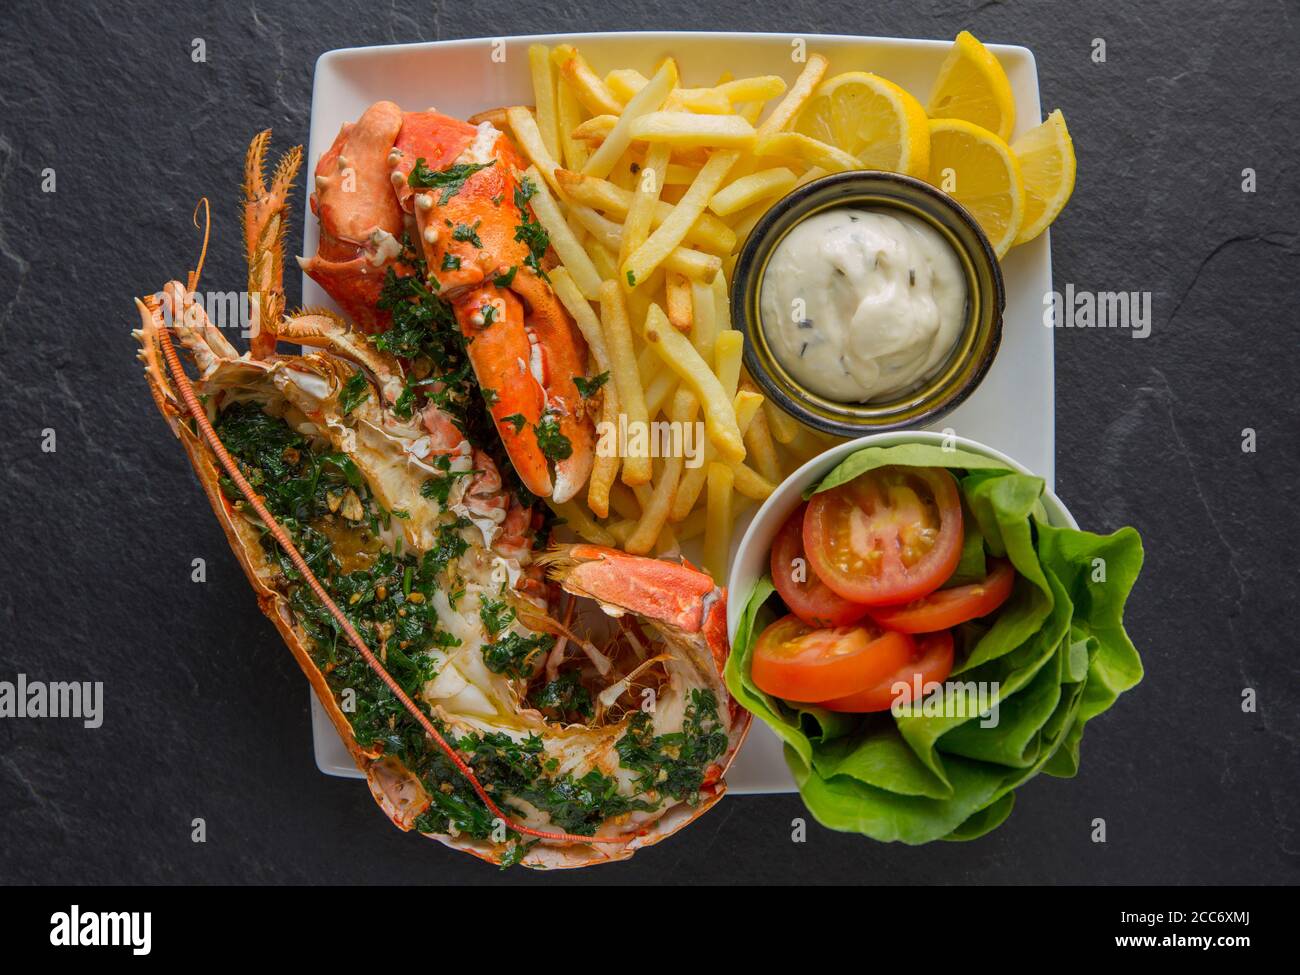 Un demi-homard, Homarus gammarus, qui a été grillé et assaisonné avec une sauce au beurre, à l'ail et au persil et servi avec des frites et de la salade. Le lobs Banque D'Images